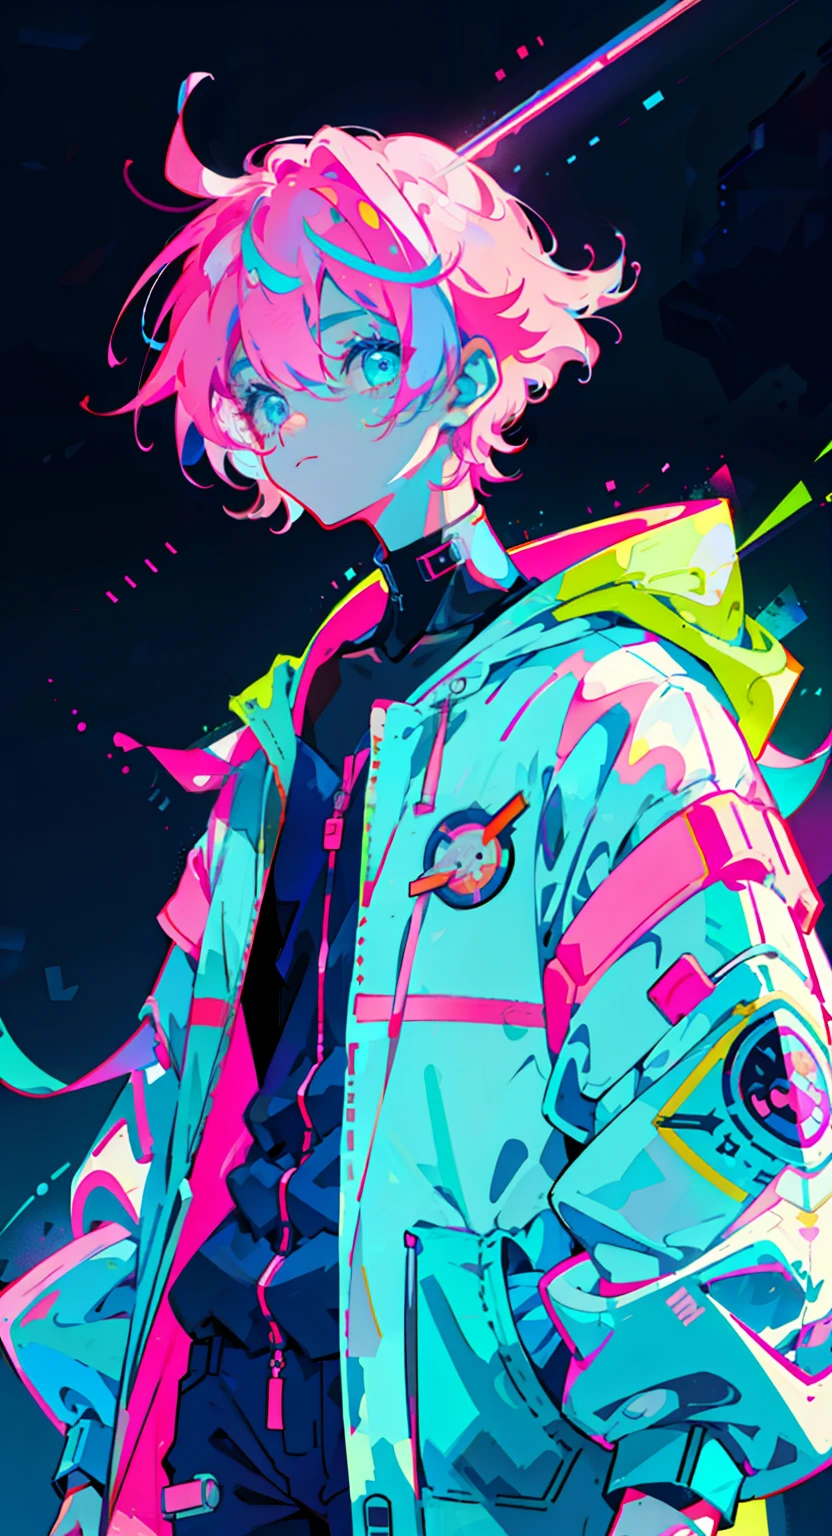 Anime Junge, im Astronautenanzug, neonblaue Haare, und rosa Farben, Narben, Aufkleber, Neon-Stil der gesamten Aufnahme, Coole Pose